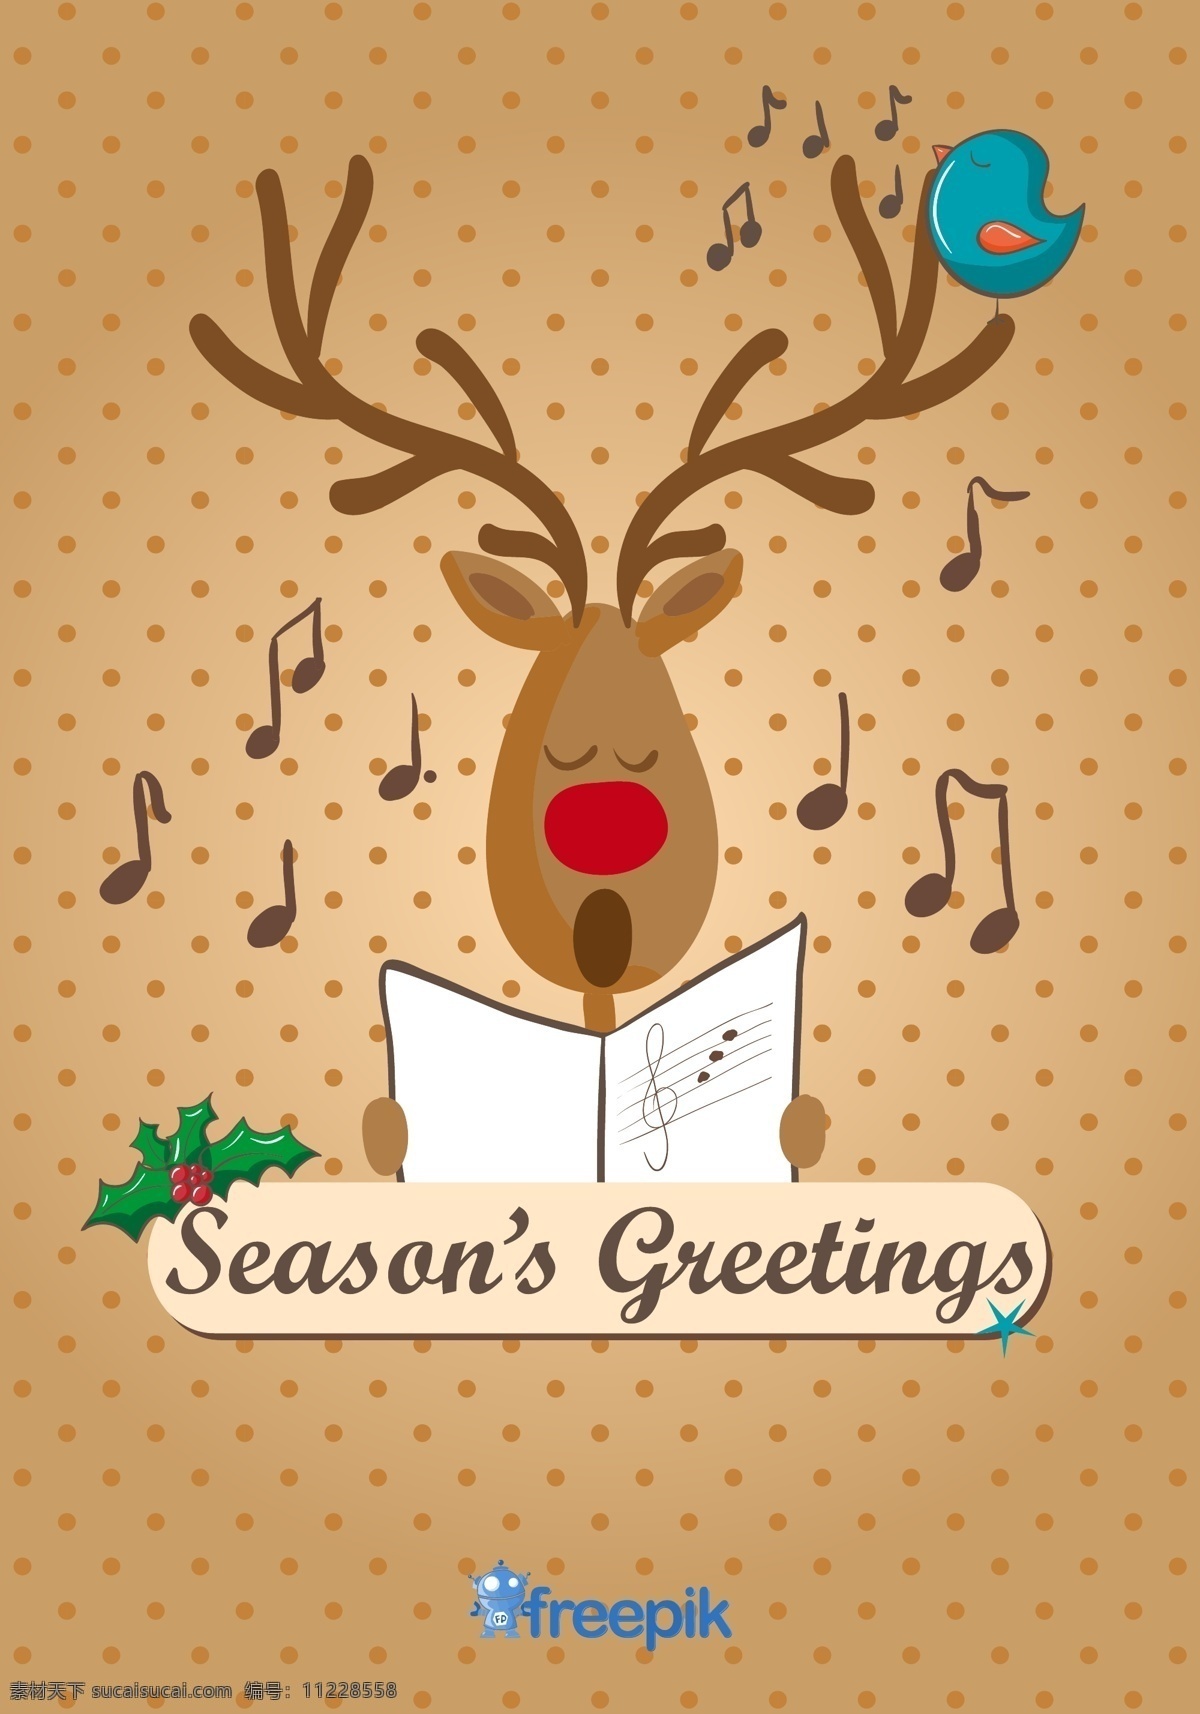 驯鹿 唱 圣诞 颂歌 卡 圣诞节 音乐 派对 卡片 鸟 雪 动物 卡通 蓝色 圣诞老人 克劳斯 艺术 人物 可爱 圣诞卡 棕色